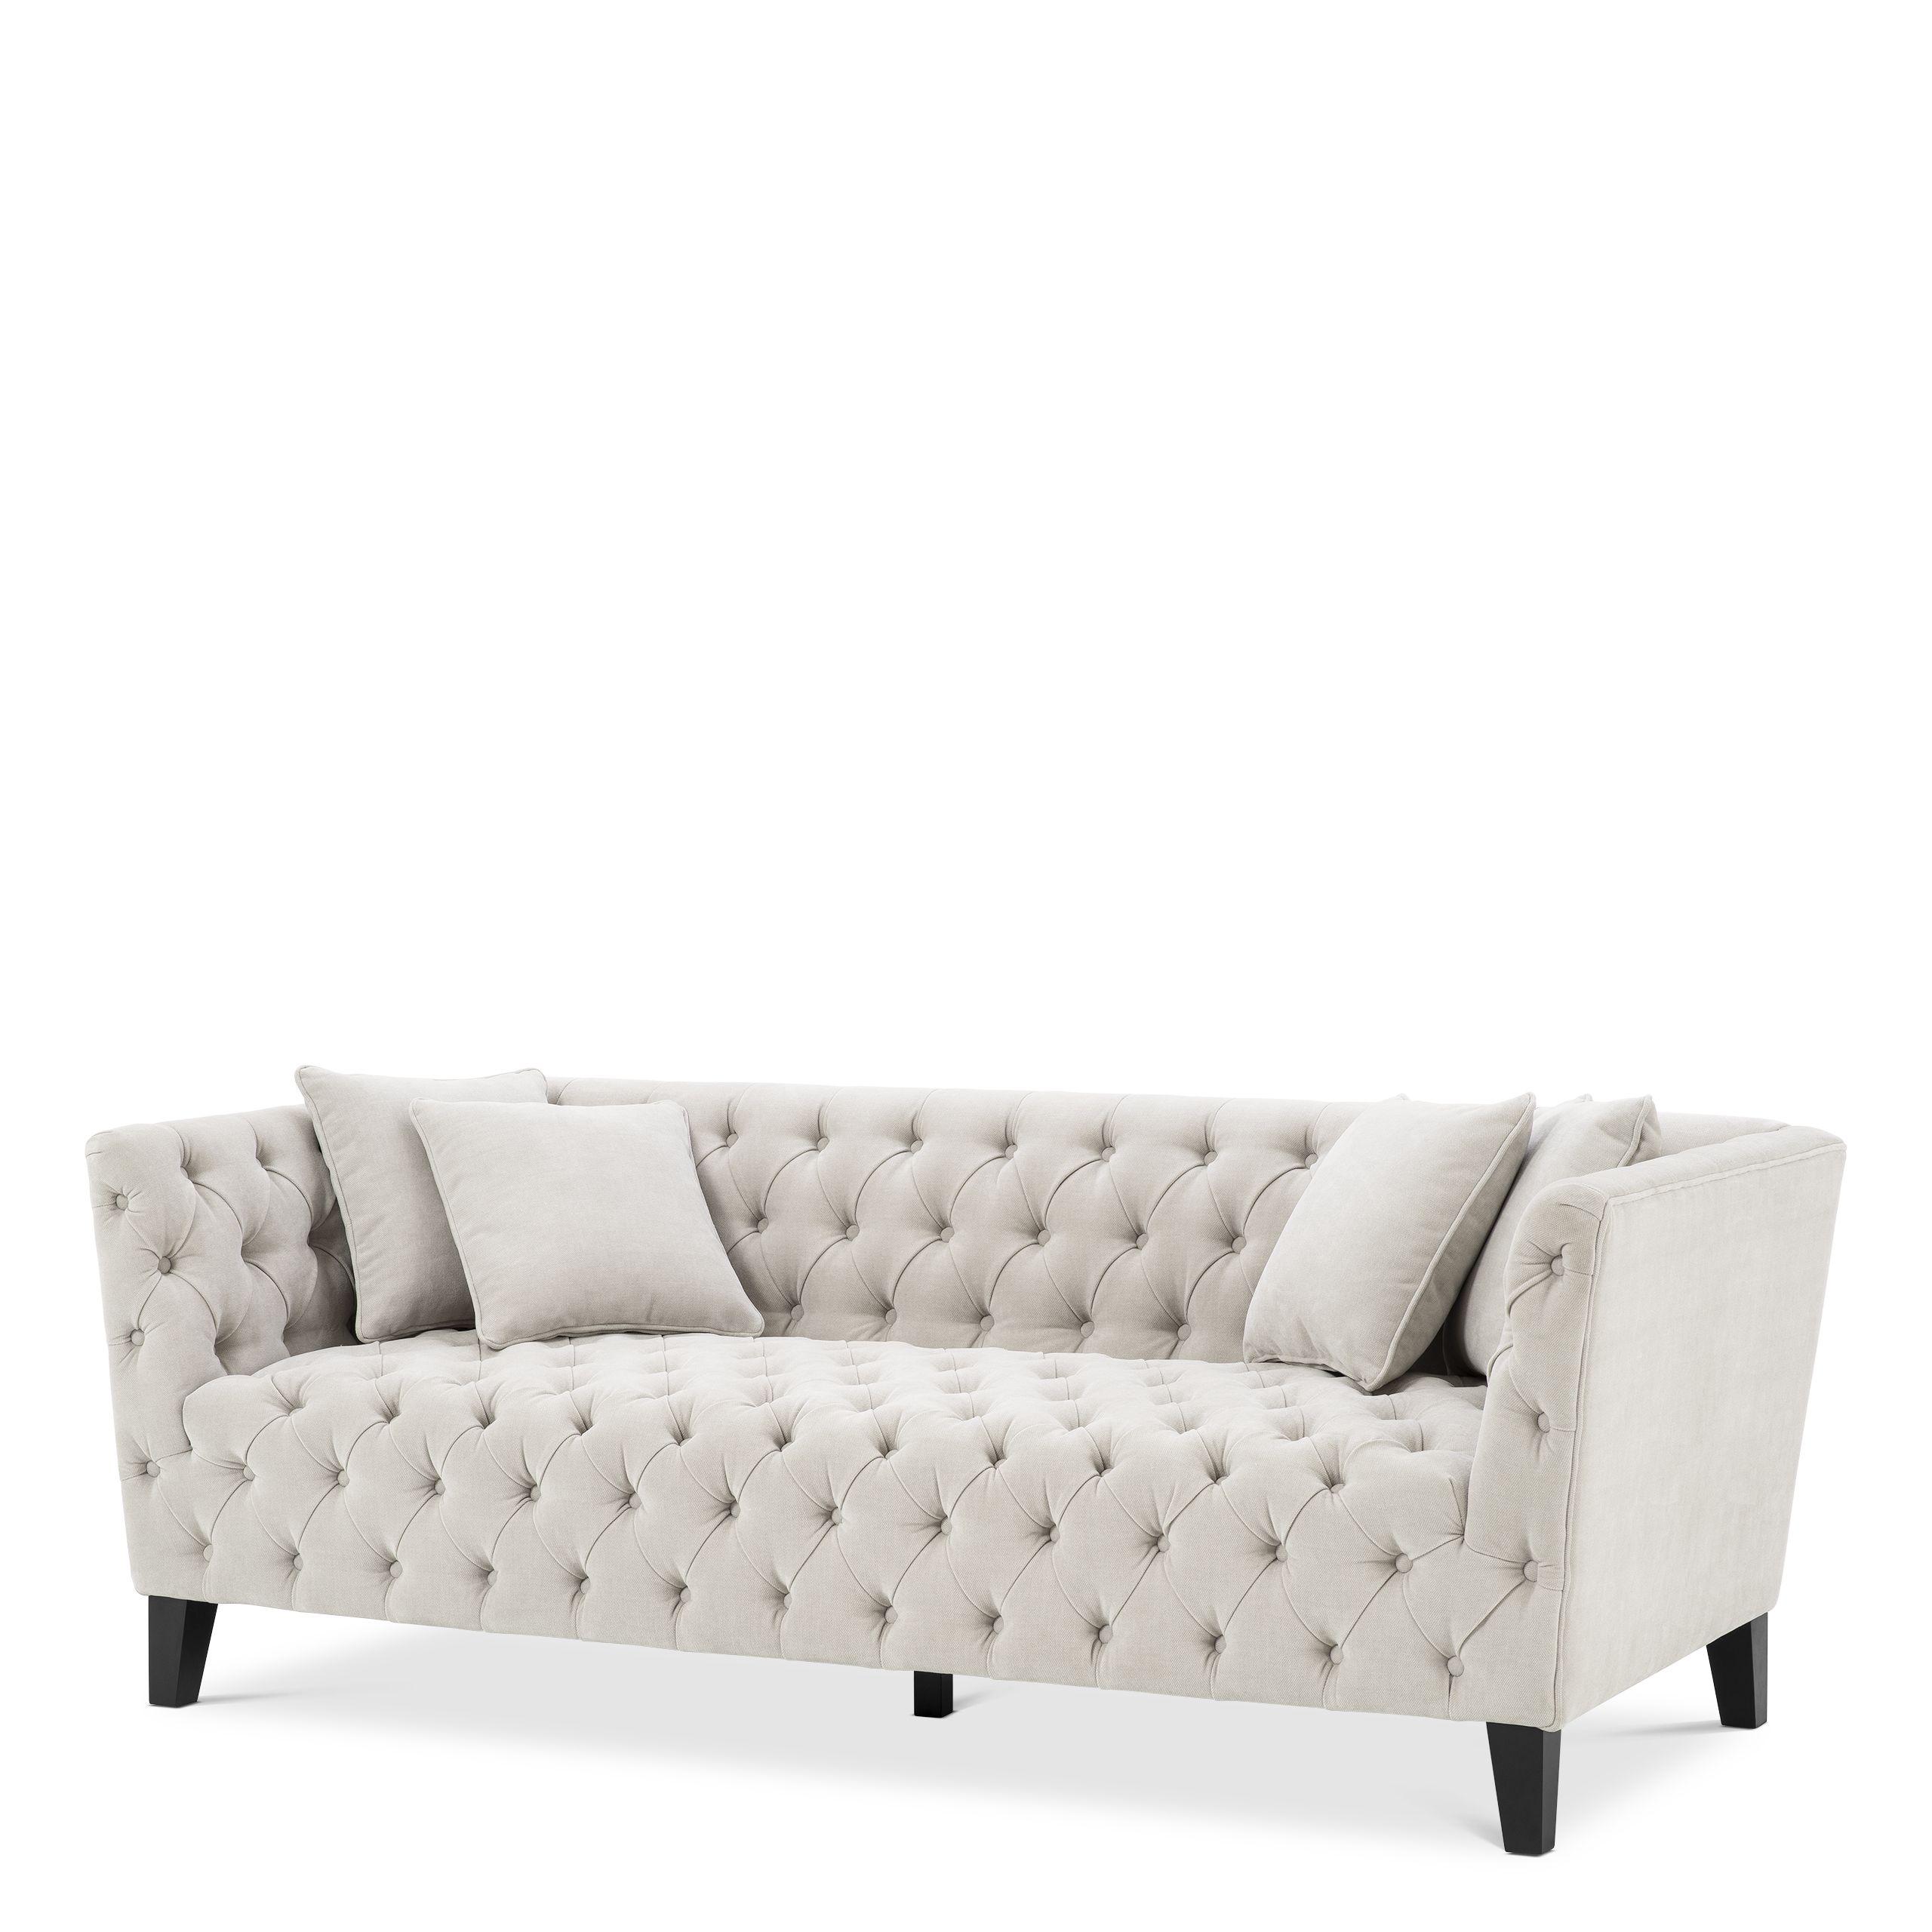 Купить Прямой диван Sofa Jason в интернет-магазине roooms.ru